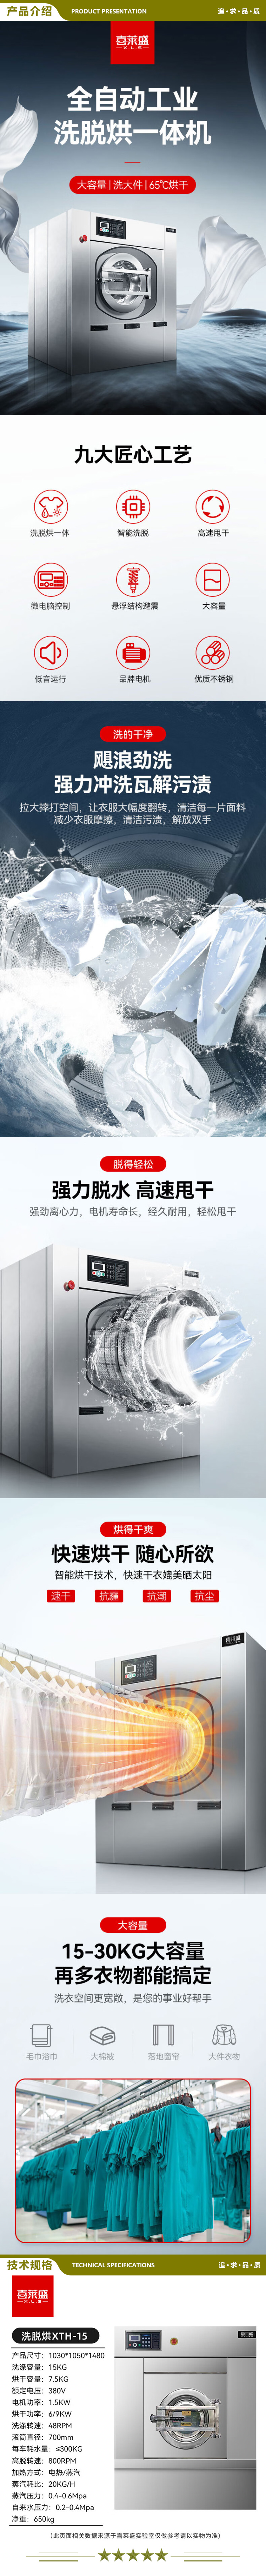 喜莱盛 XTH-15 商用洗脱烘一体机大型工业洗衣机烘干机 酒店宾馆床单全自动干衣机15公斤级  2.jpg